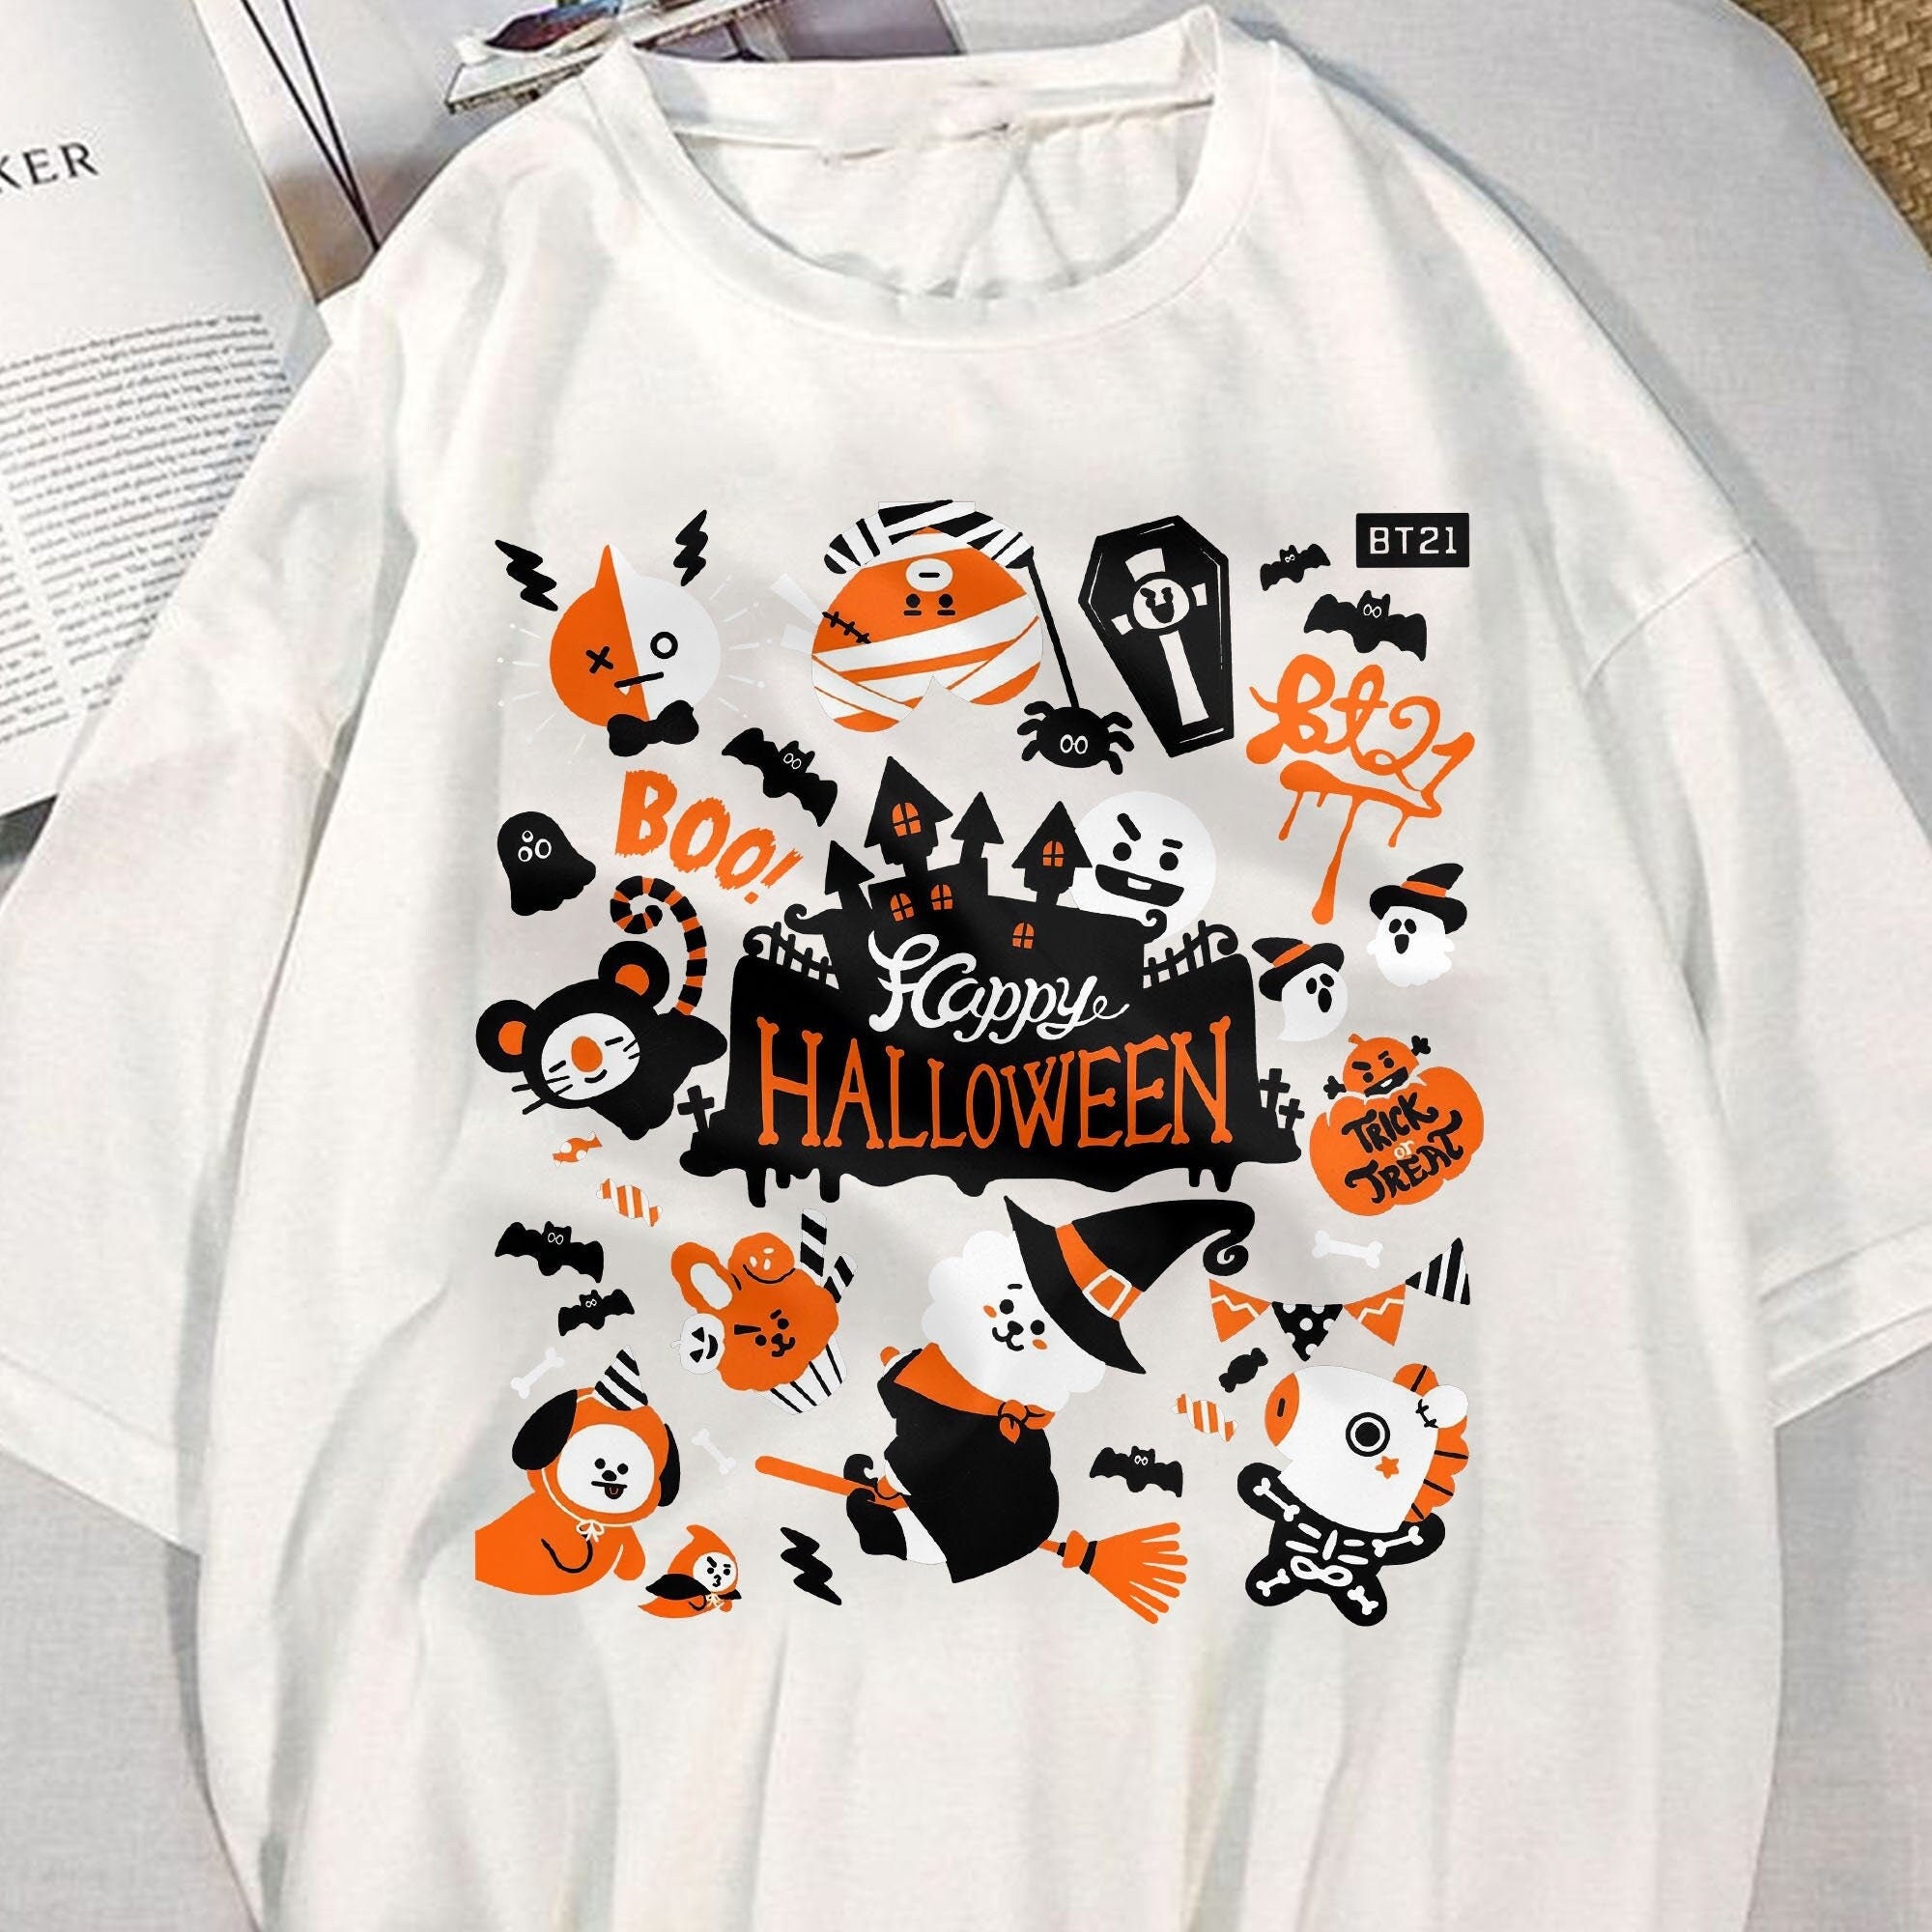 KnoxvilleArtLab BT21 T-Shirt, BTS Jungkook Sweater, Tata Hoodie merch for Kpop Fans - Lightstick